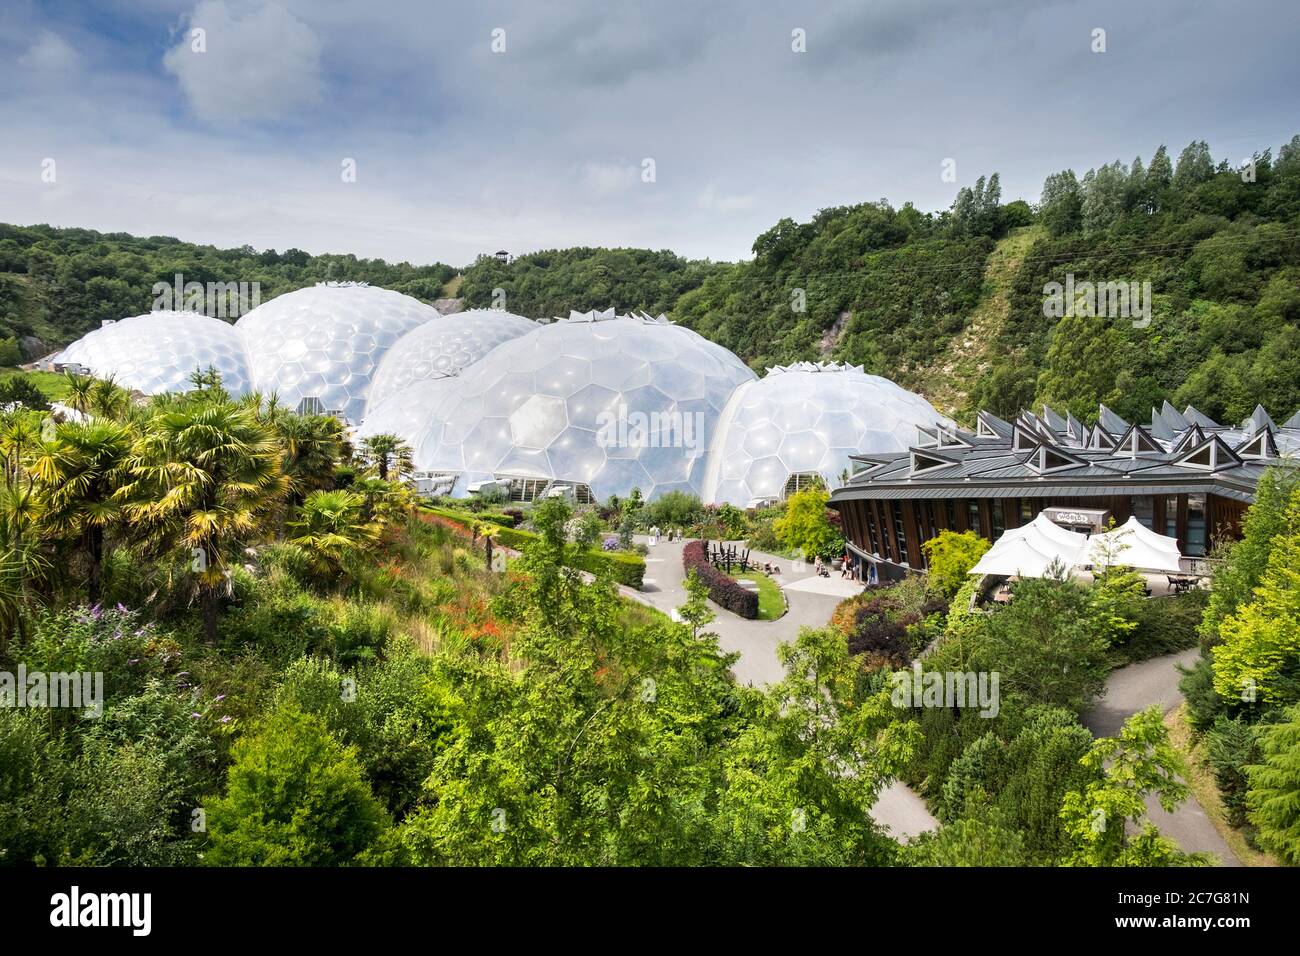 Le cupole geodesiche del bioma al progetto Eden in Cornovaglia. Foto Stock